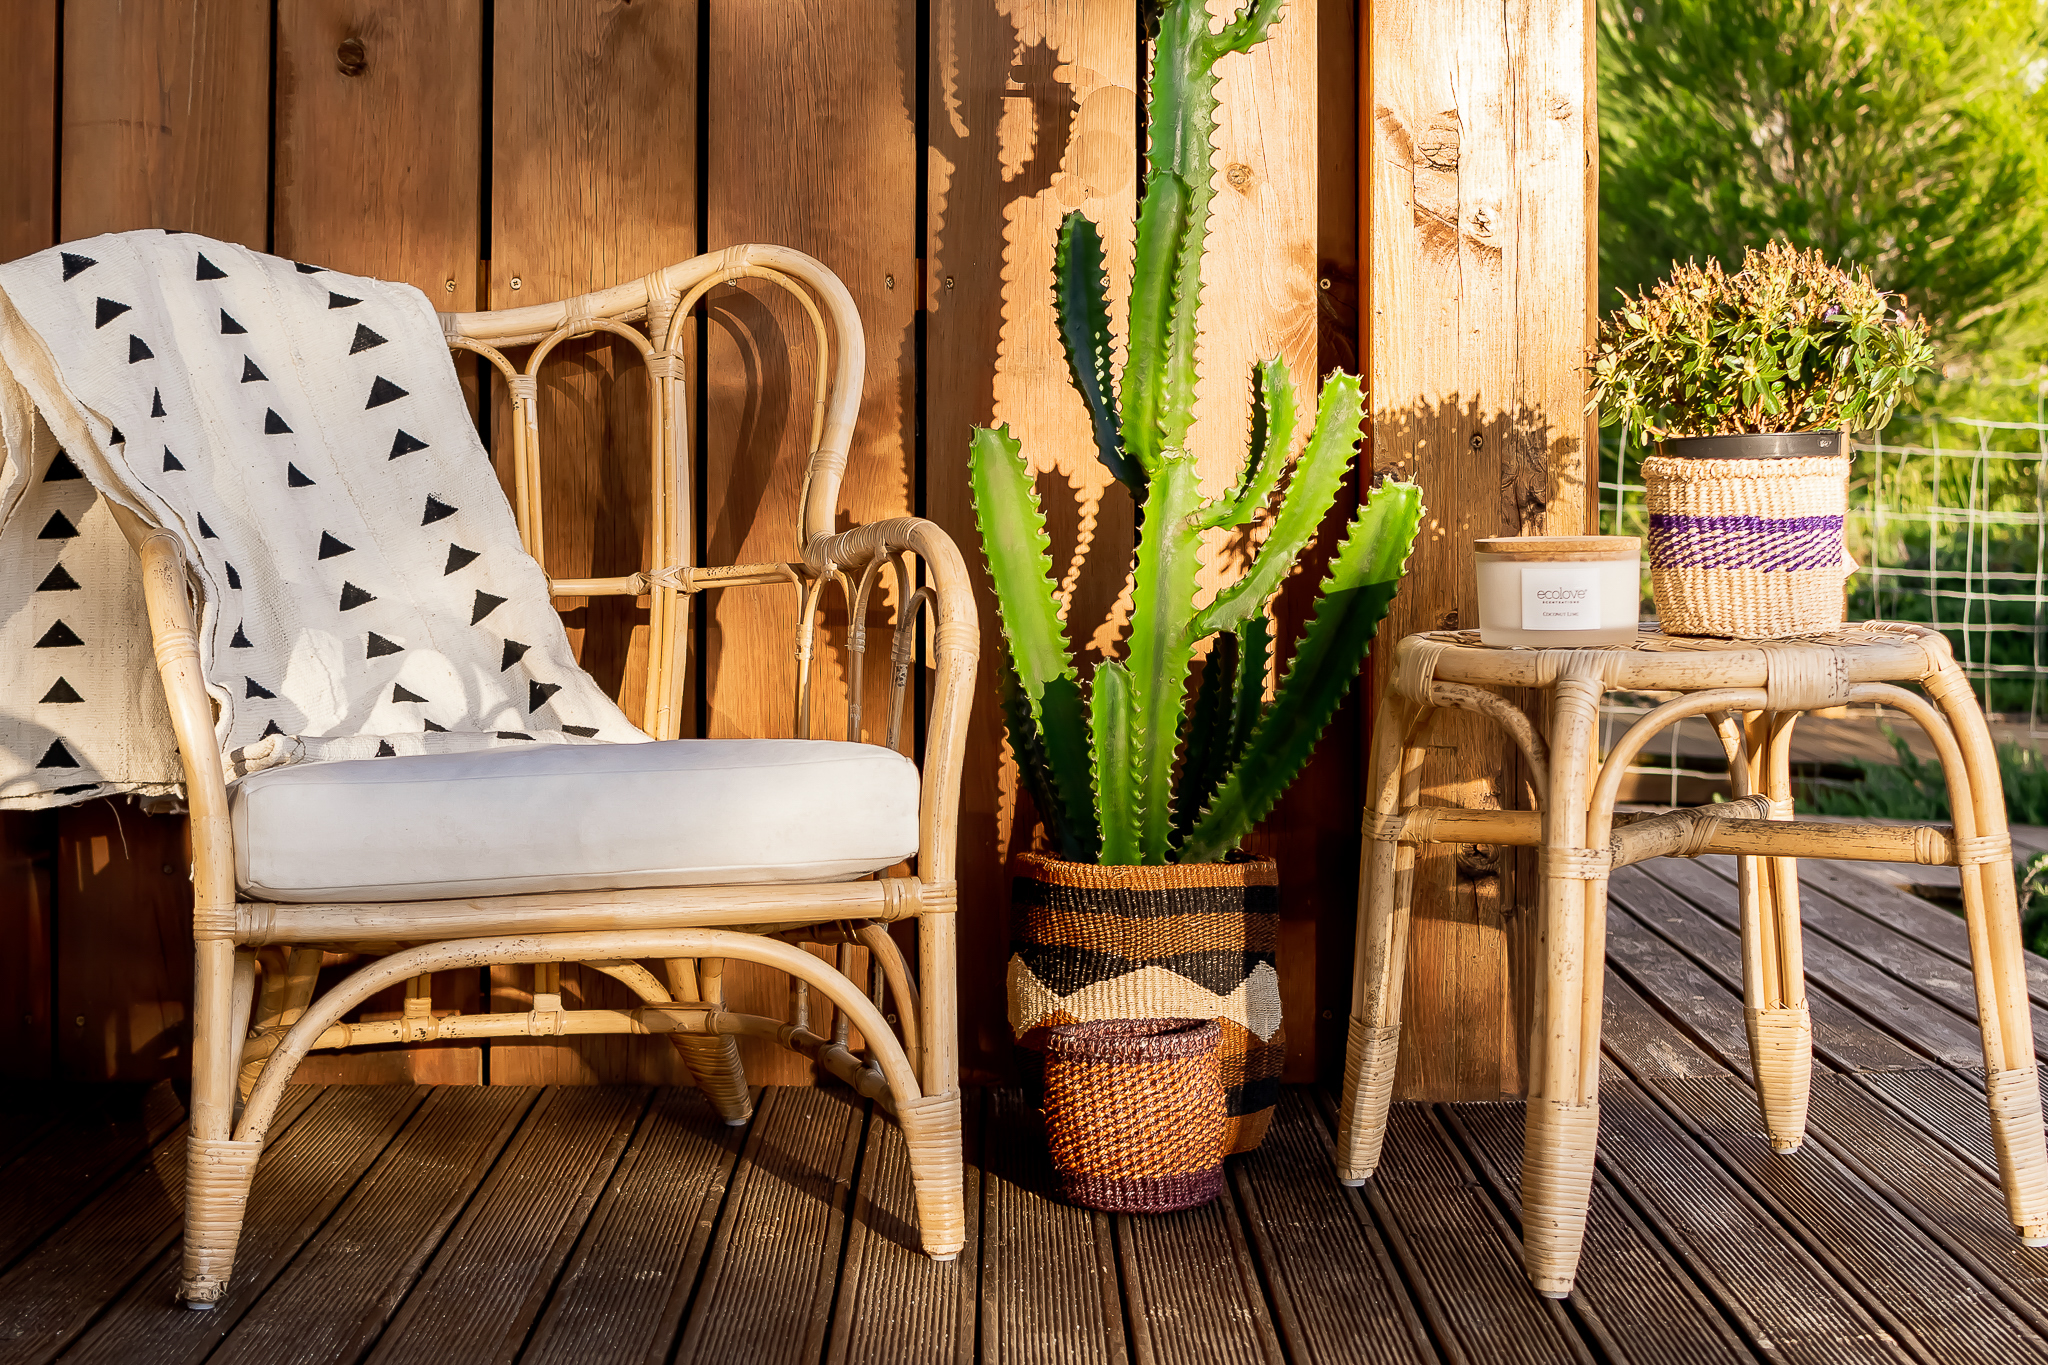 espaço exterior com duas cadeiras do estilo mediterrâneo com mantas e plantas